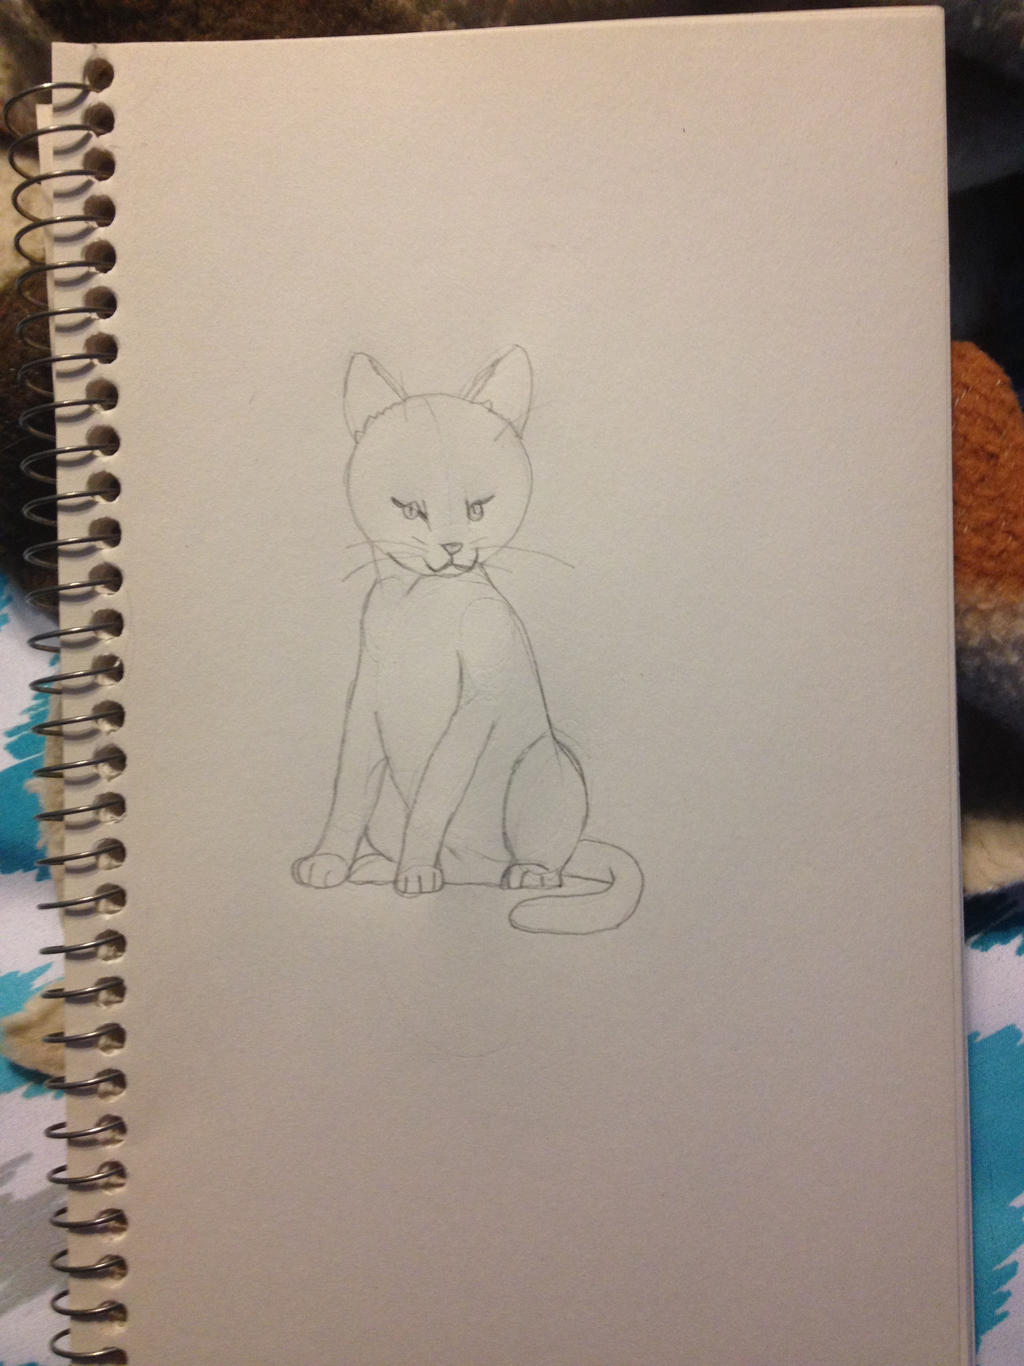 Sketch of a cat